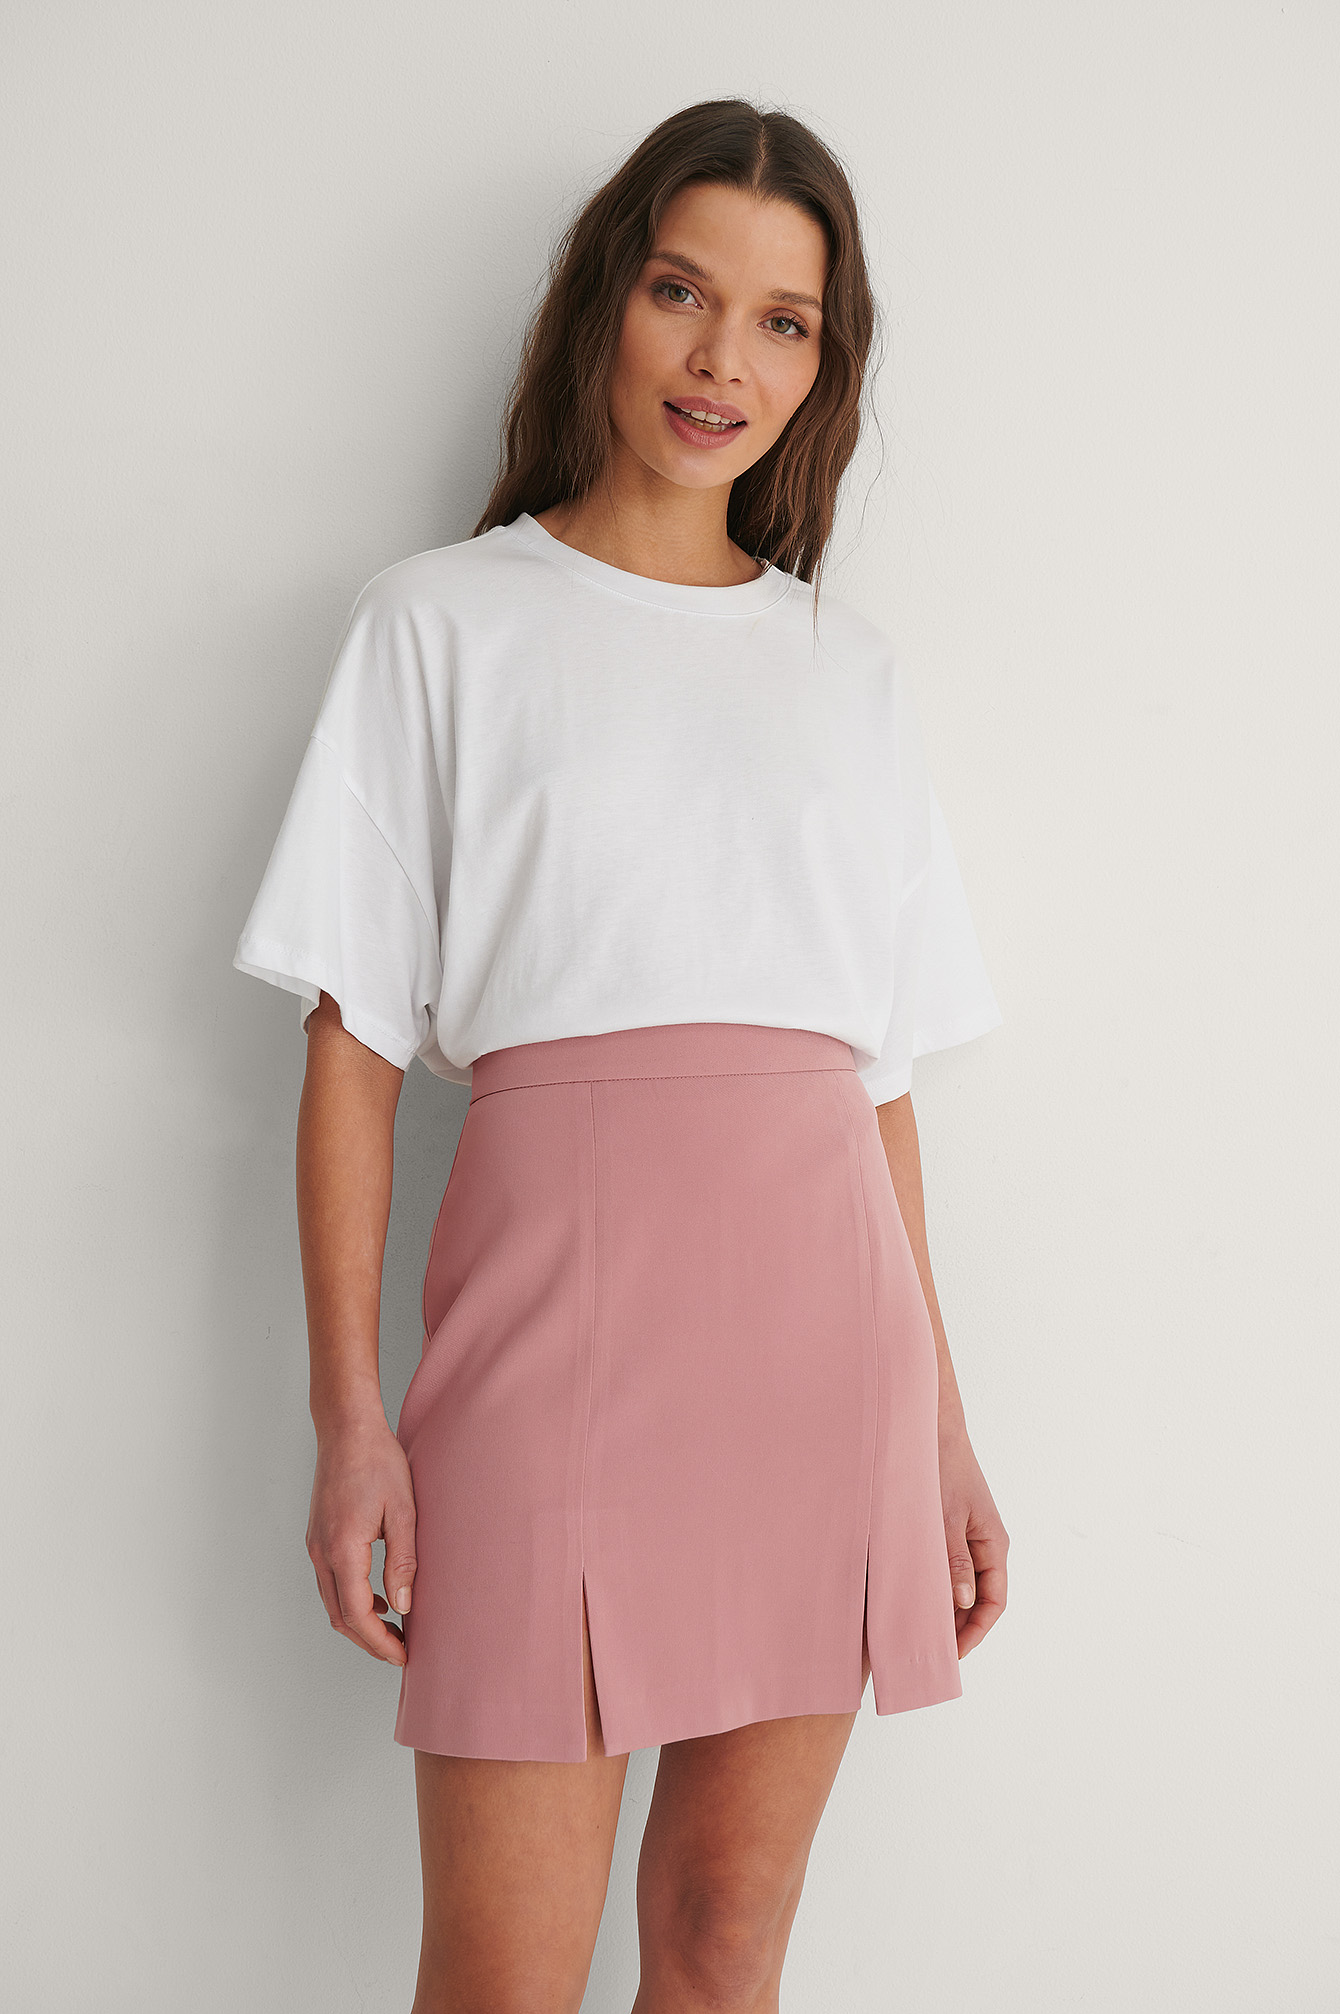 white mini skirt with slits